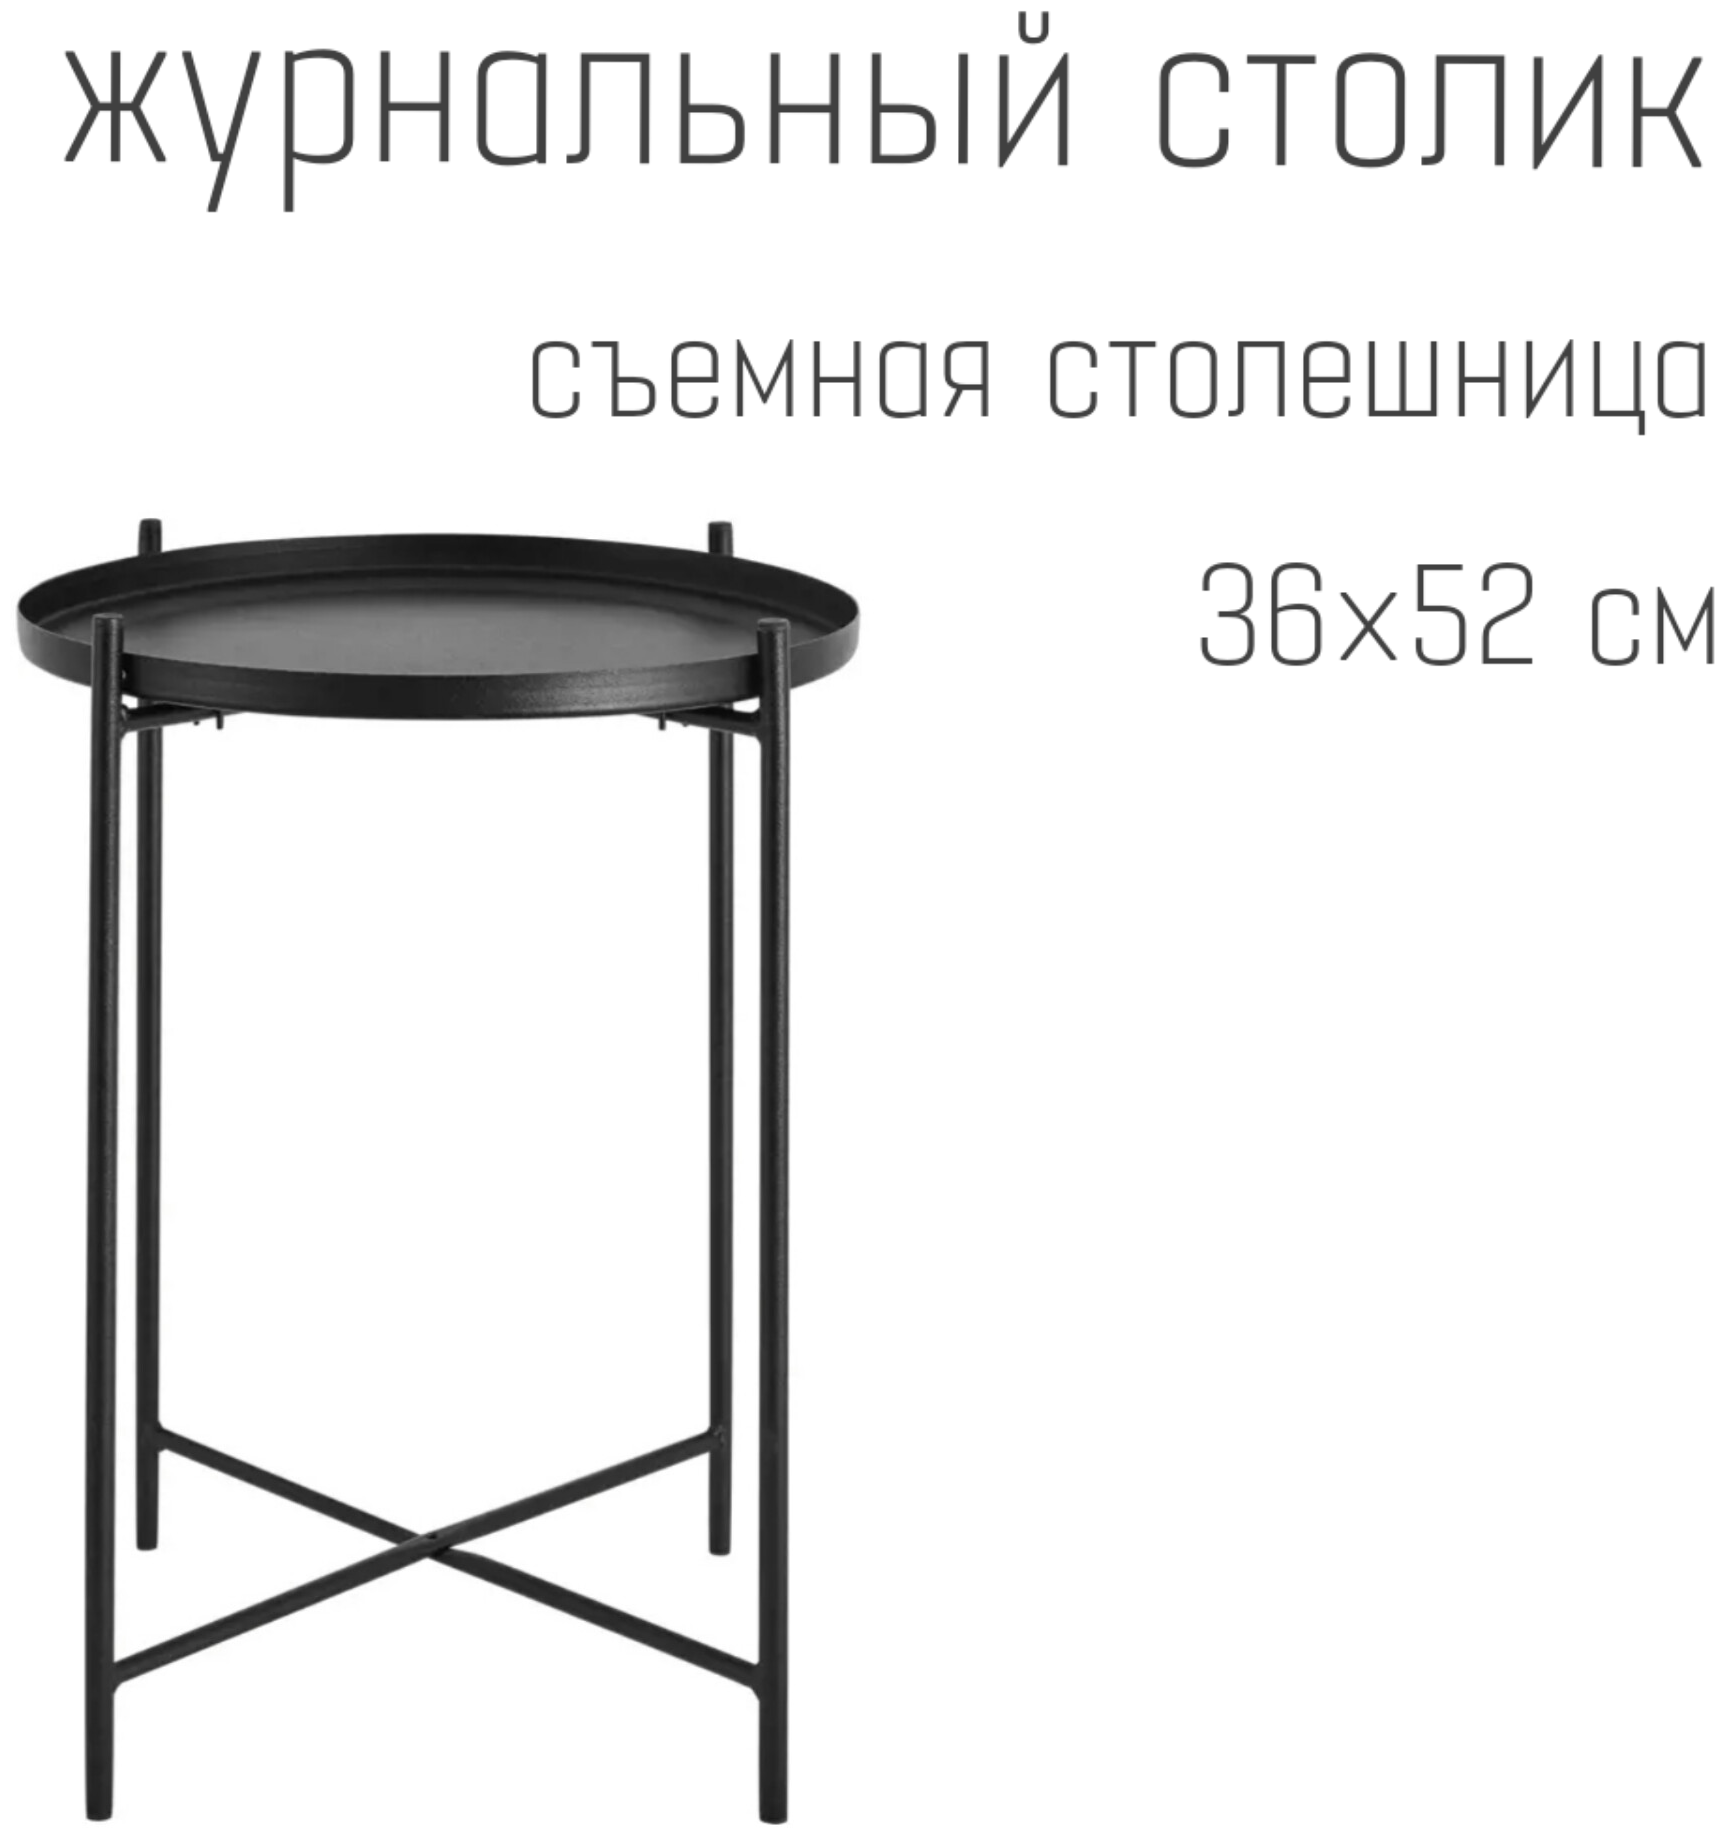 Журнальный столик 52 см для гостиной черного цвета, кофейный столик, стол для интерьера, журнальный стол черный